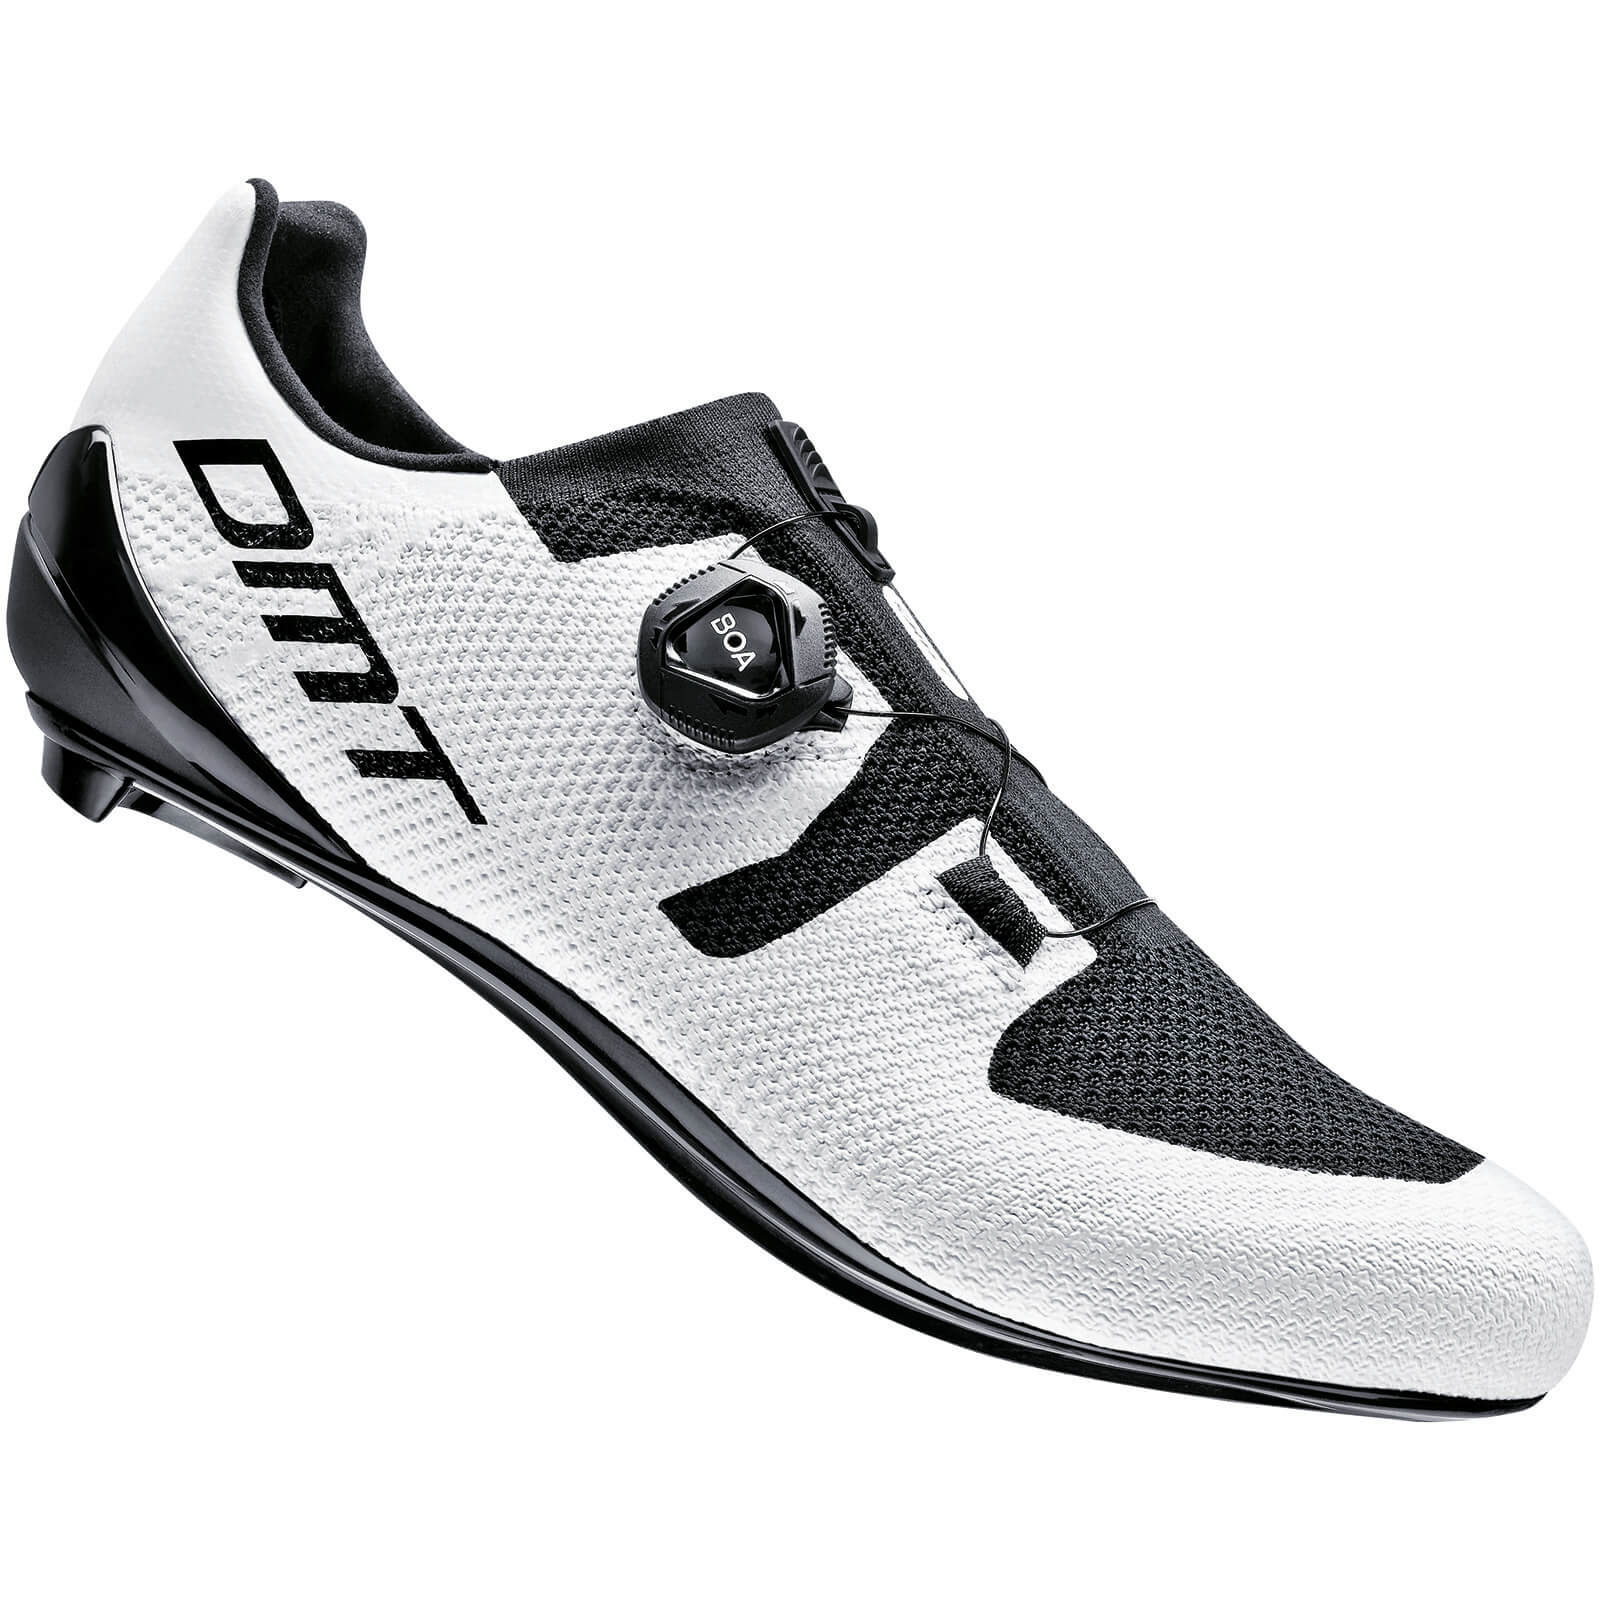 DMT KR3 Road Shoes - EU 44.5 - White/Black